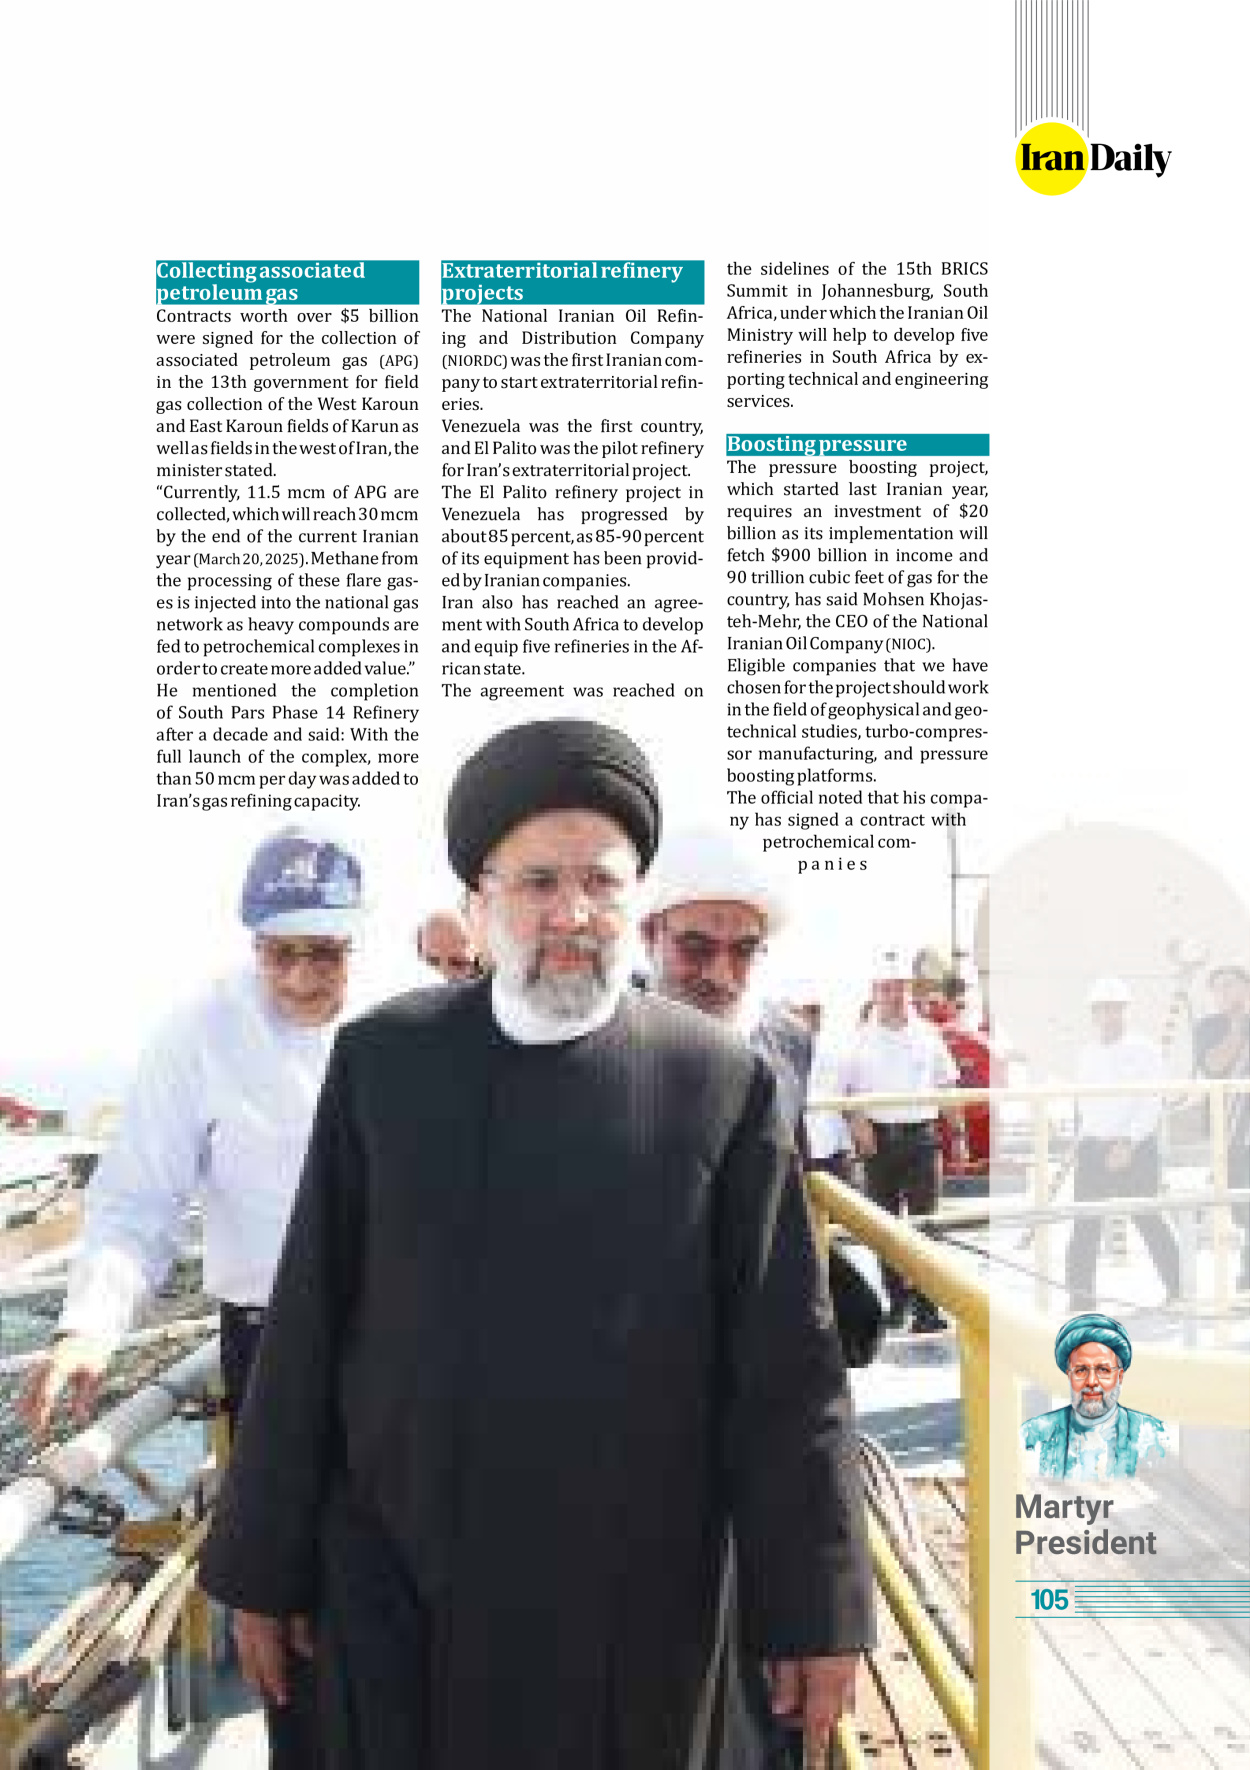 روزنامه ایران - ویژه نامه وِزه نامه چهلم شهید رییسی( انگلیسی) - ۱۷ تیر ۱۴۰۳ - صفحه ۱۰۵